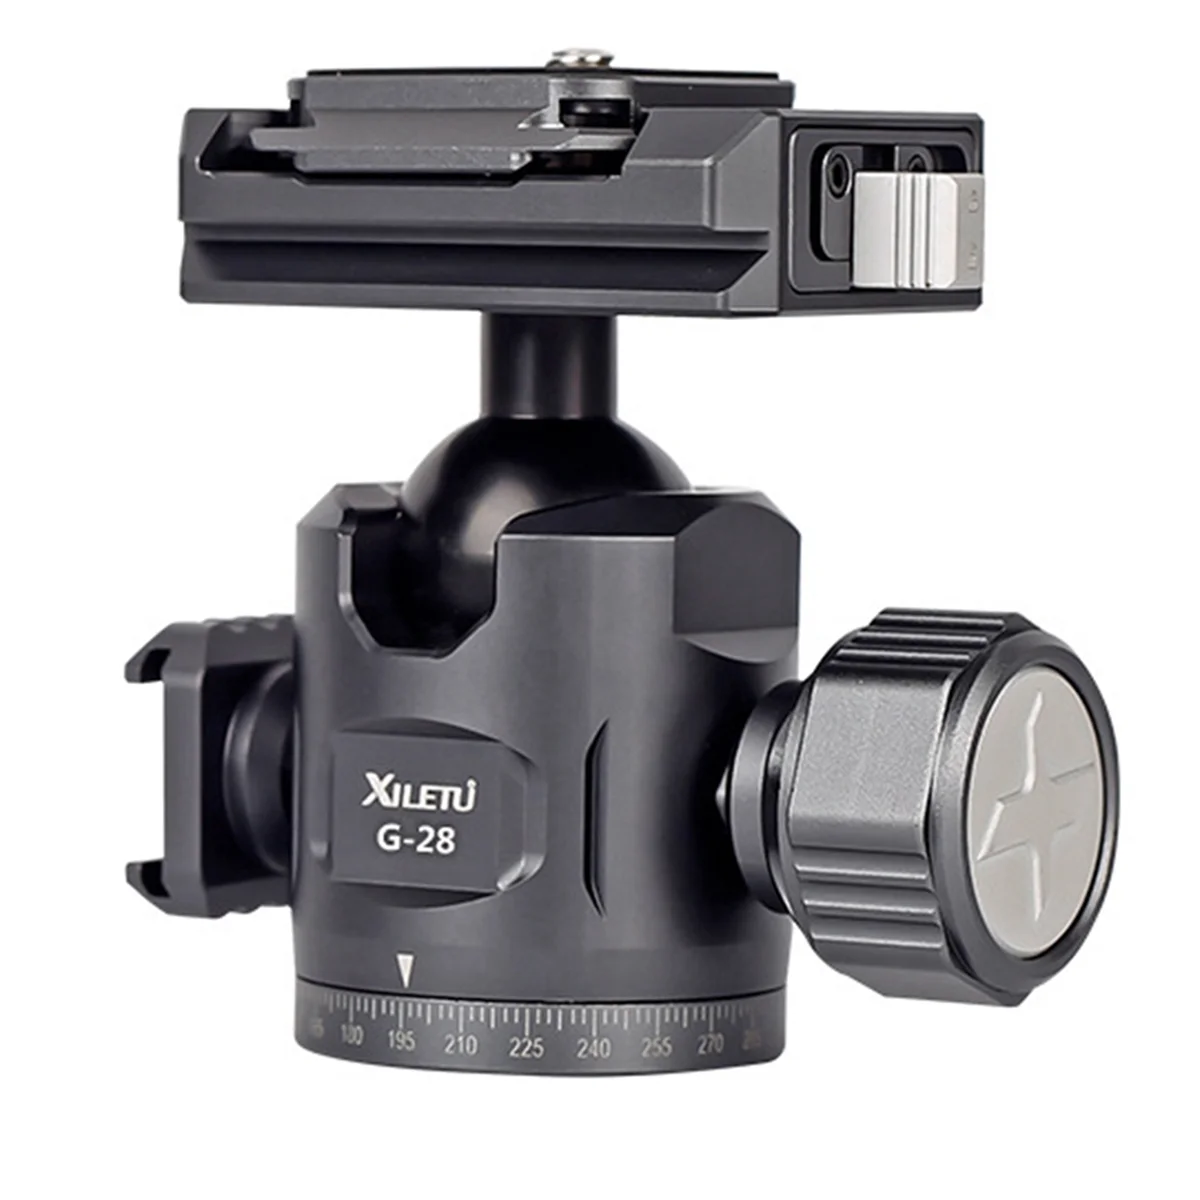 

XILETU быстрая разборка Gimbal Aka базовая микро-SLR камера горизонтальная и вертикальная съемка универсальный стабилизатор штатив G28